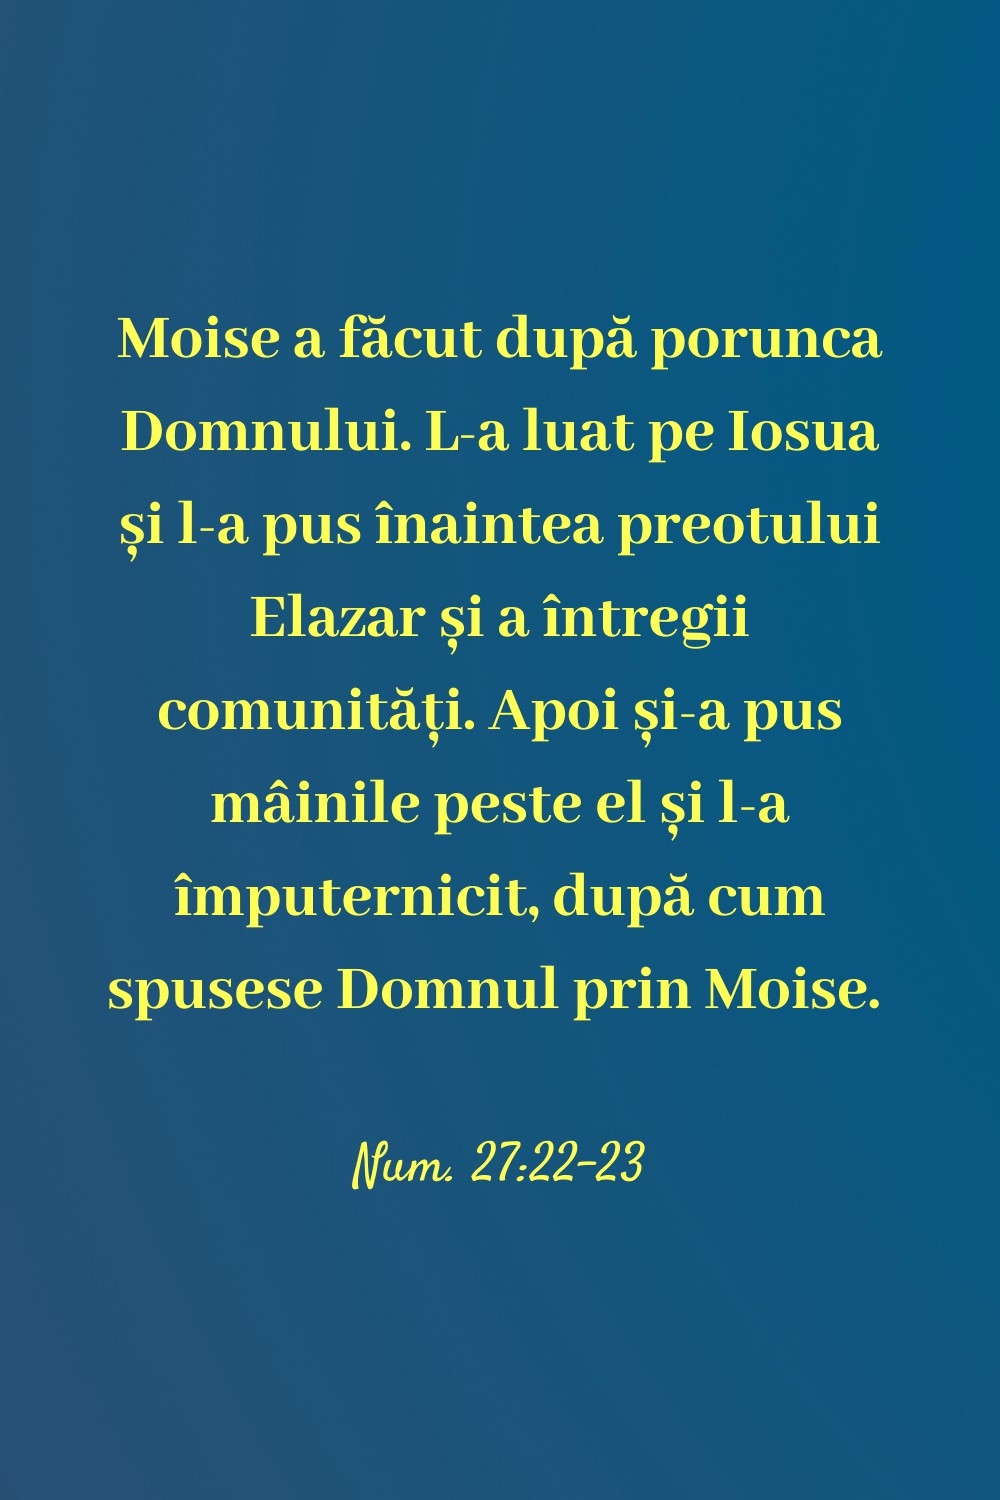 Moise a făcut după porunca Domnului. L‑a luat pe Iosua și l‑a pus înaintea preotului Elazar și a întregii comunități. Apoi și‑a pus mâinile peste el și l‑a împuternicit, după cum spusese Domnul prin Moise. Num. 27:22-23